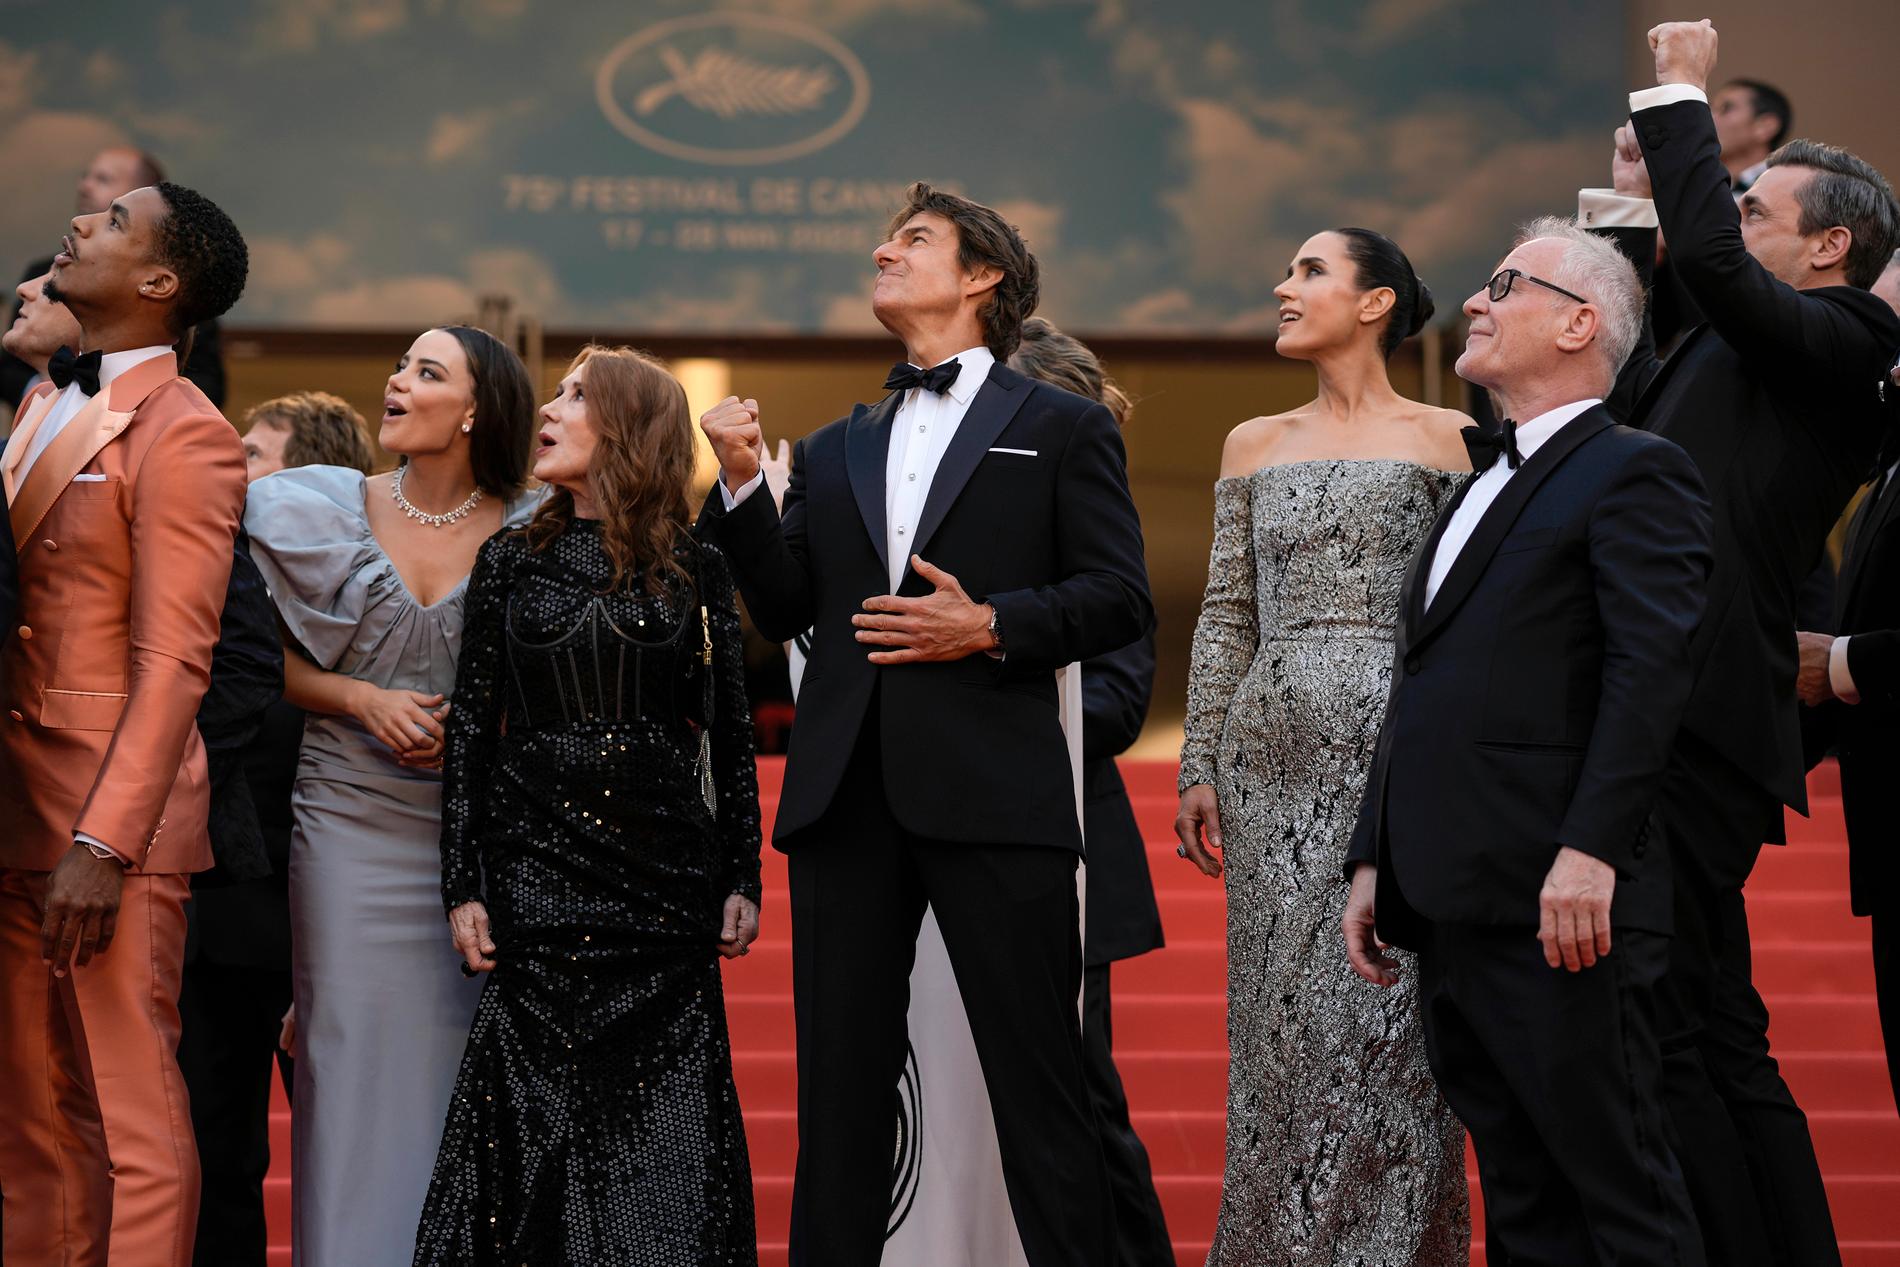 Tom Cruise och gänget som representerade "Top Gun: Maverick" överraskades av stridsflygplan som hedrade skådespelaren med en uppvisning ovanför röda mattan i Cannes.